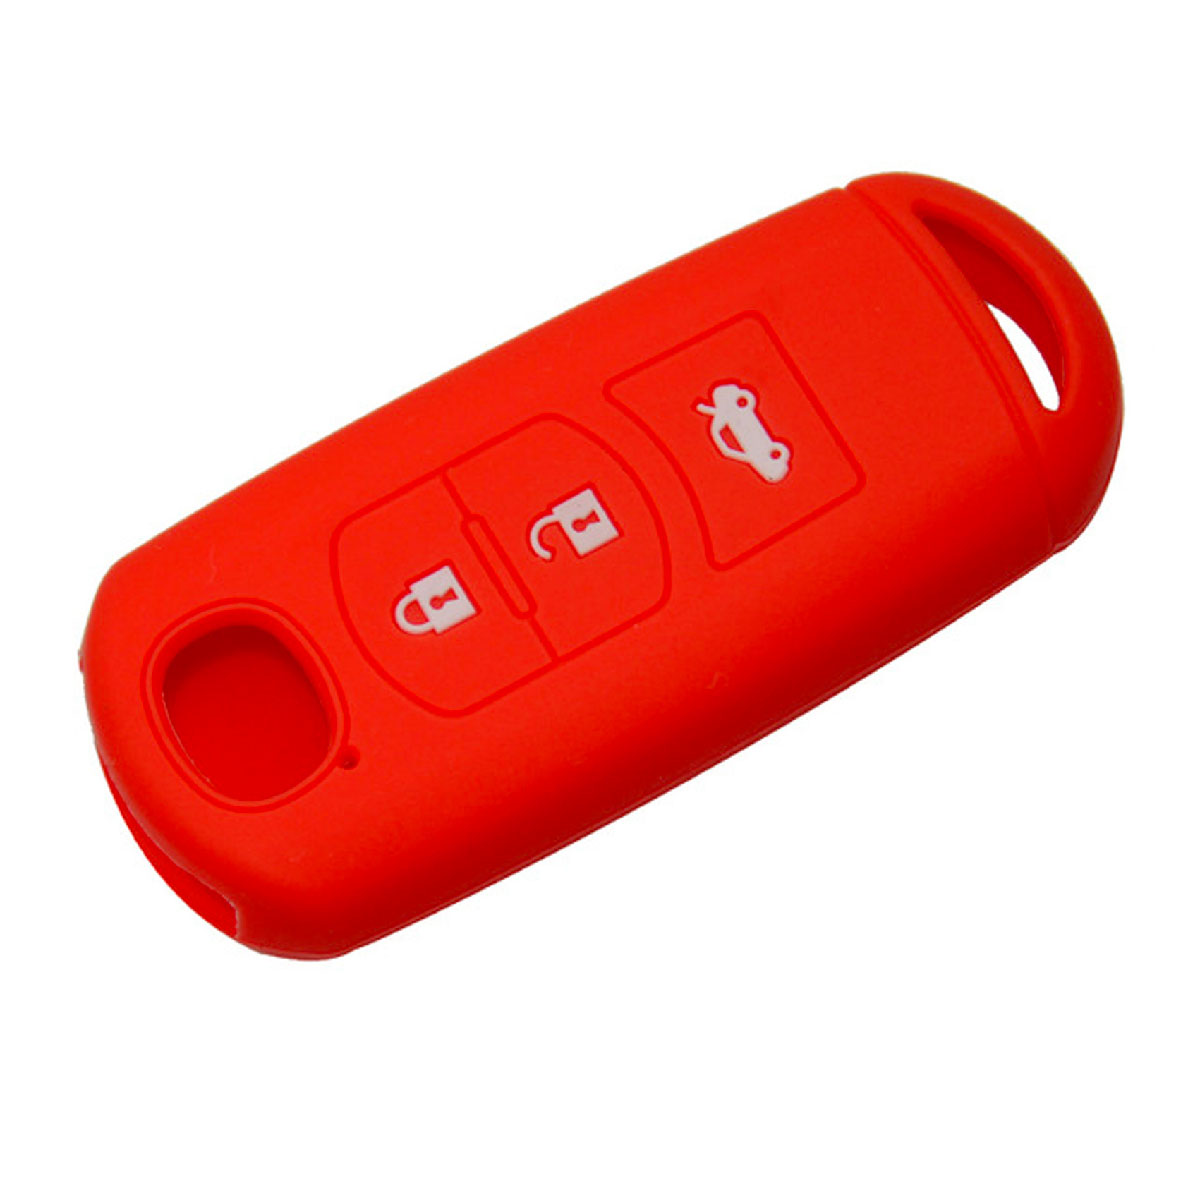 Чехол автосигнализации MAZDA 2, 3, 5, 6, 8, Atenza CX5 CX-7 CX-9 MX-5 RX, на 3 кнопки, силиконовая, цвет красный.